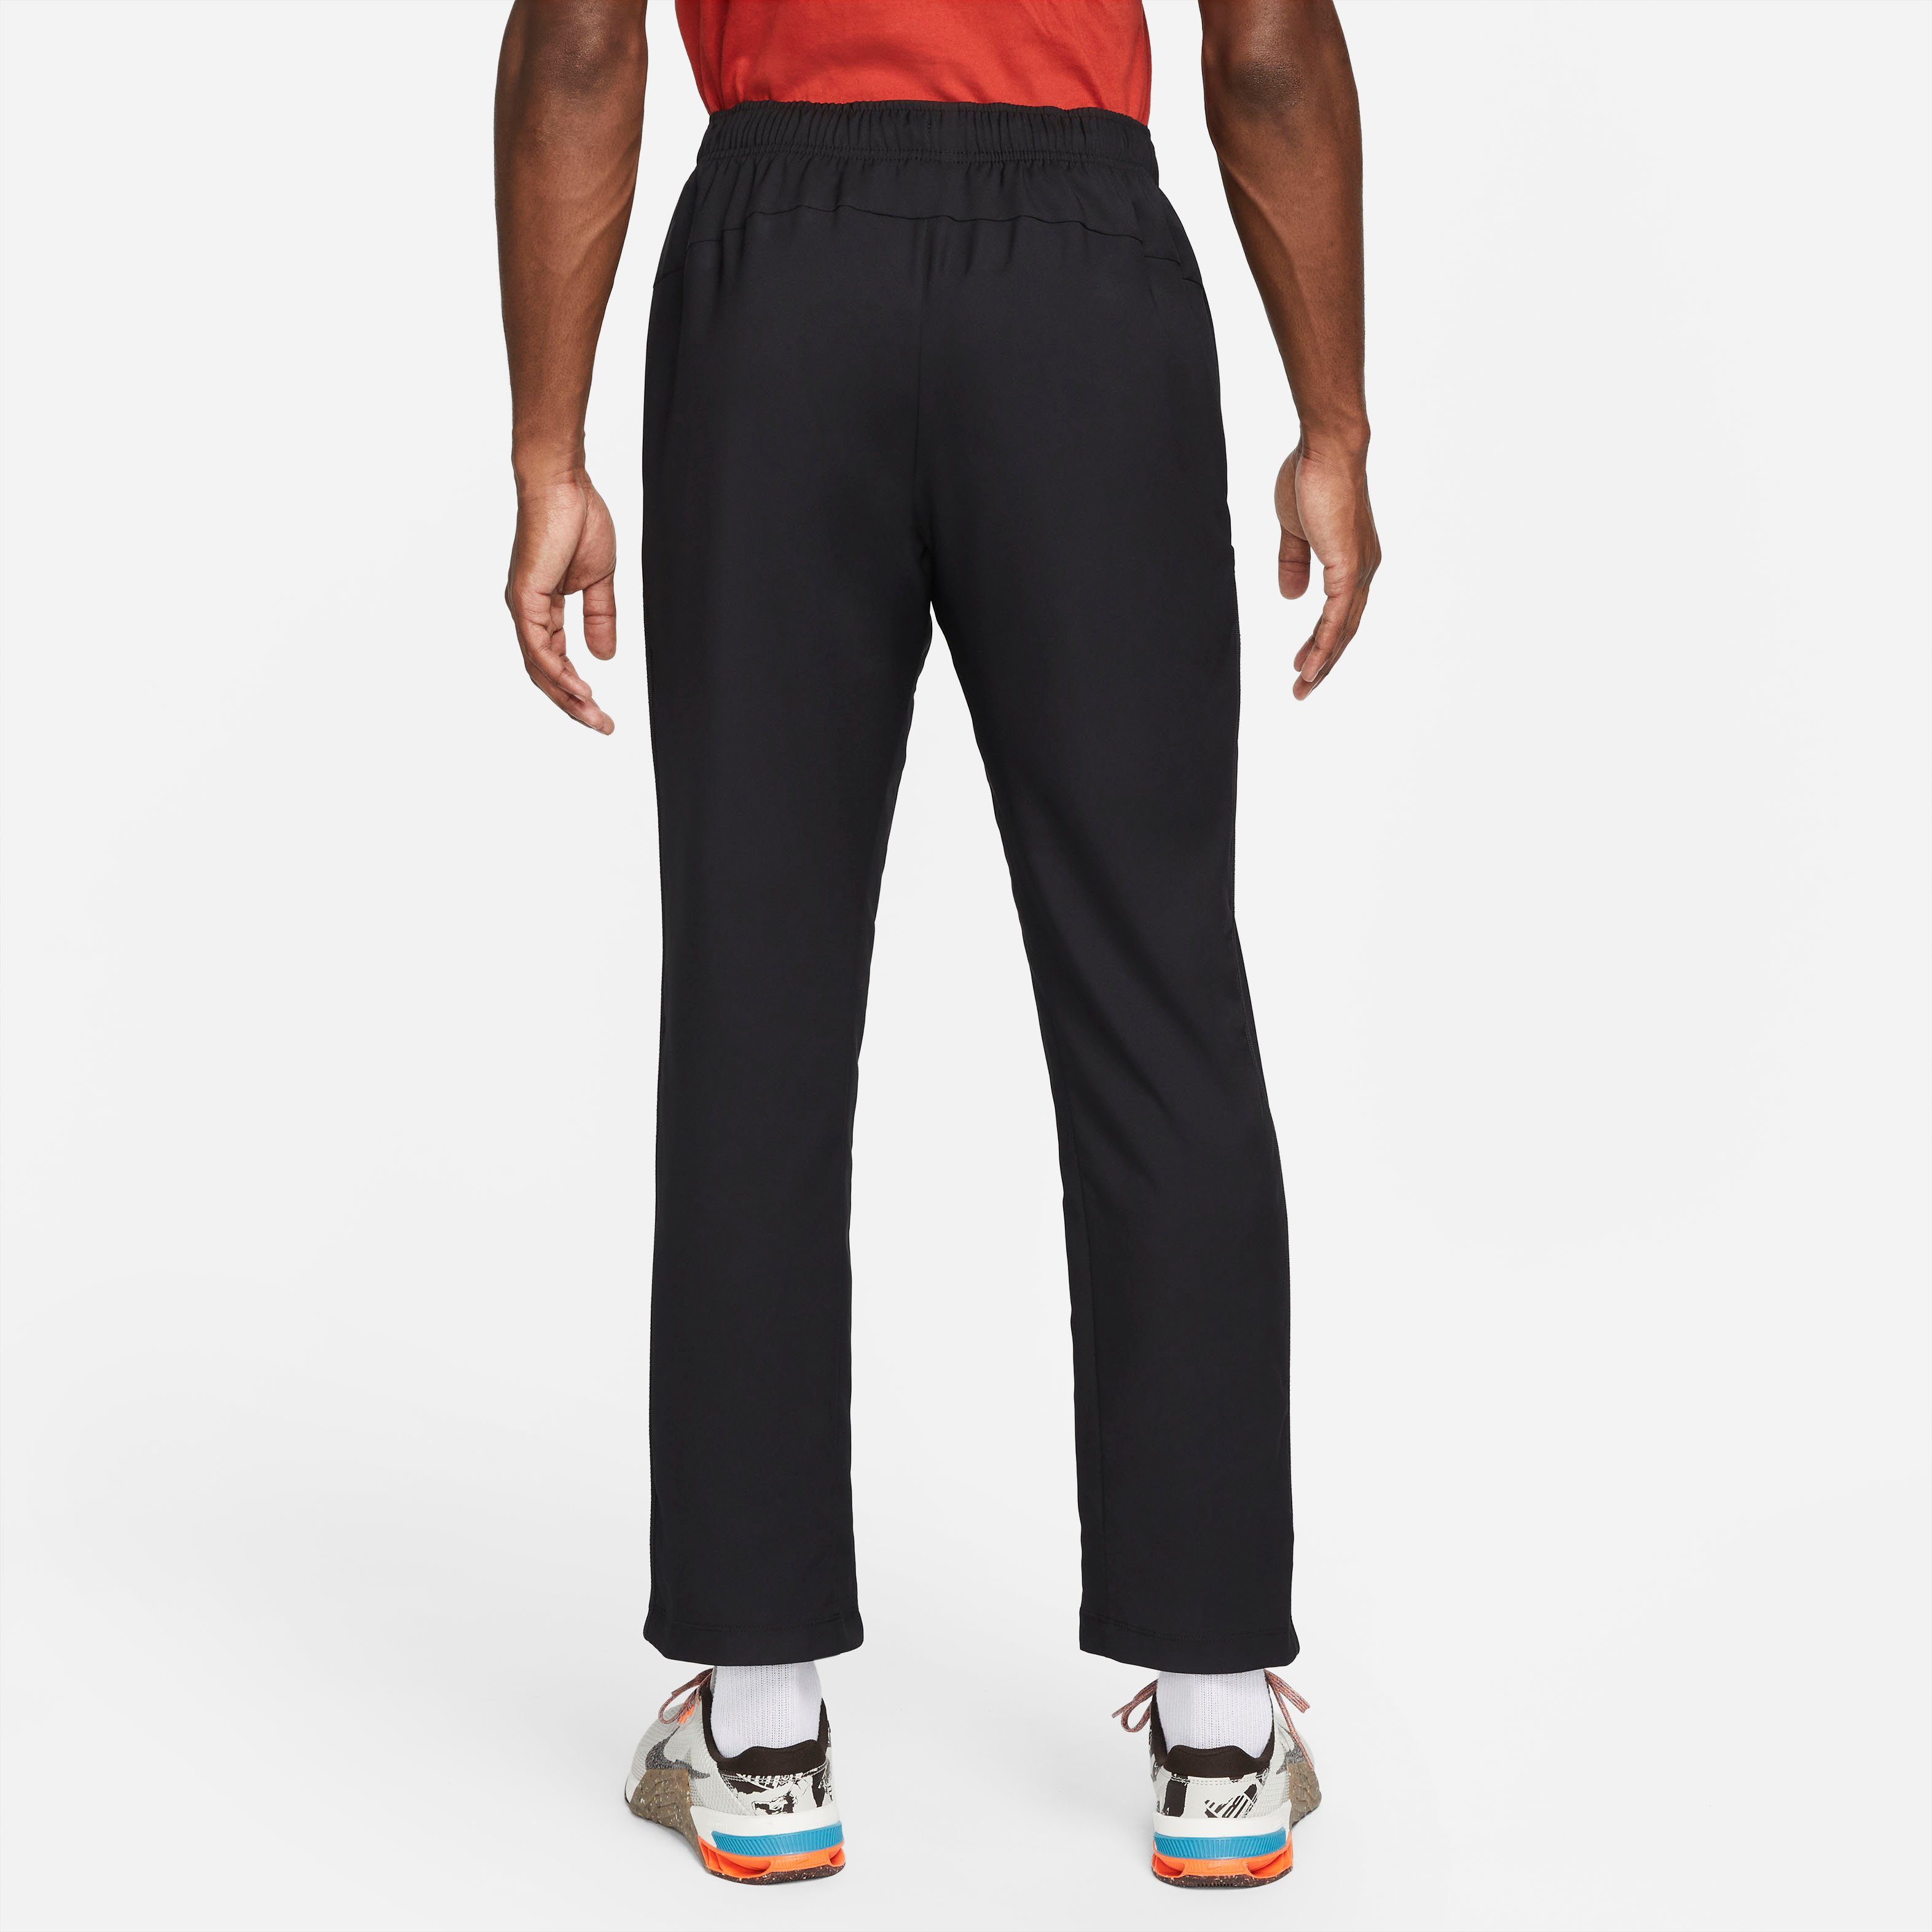 Nike Sporthose Dri-FIT Men's Woven Pants Training Team